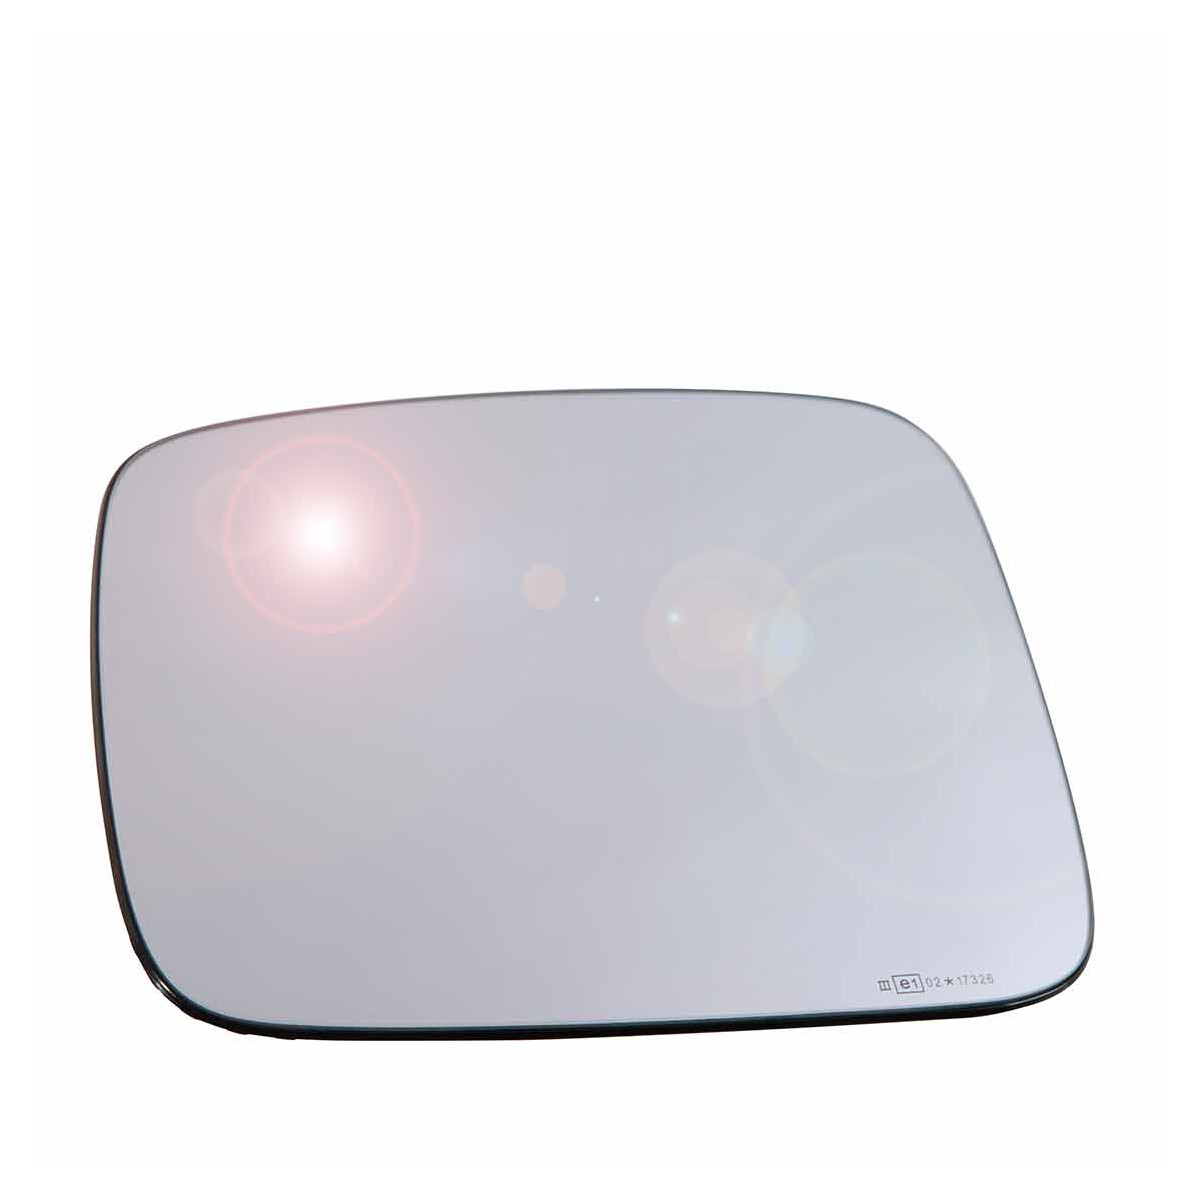 Spiegelglas (asph.-weitw.) mit Trägerpl. Aussenspiegel elektrisch  verstellbar und beheizbar